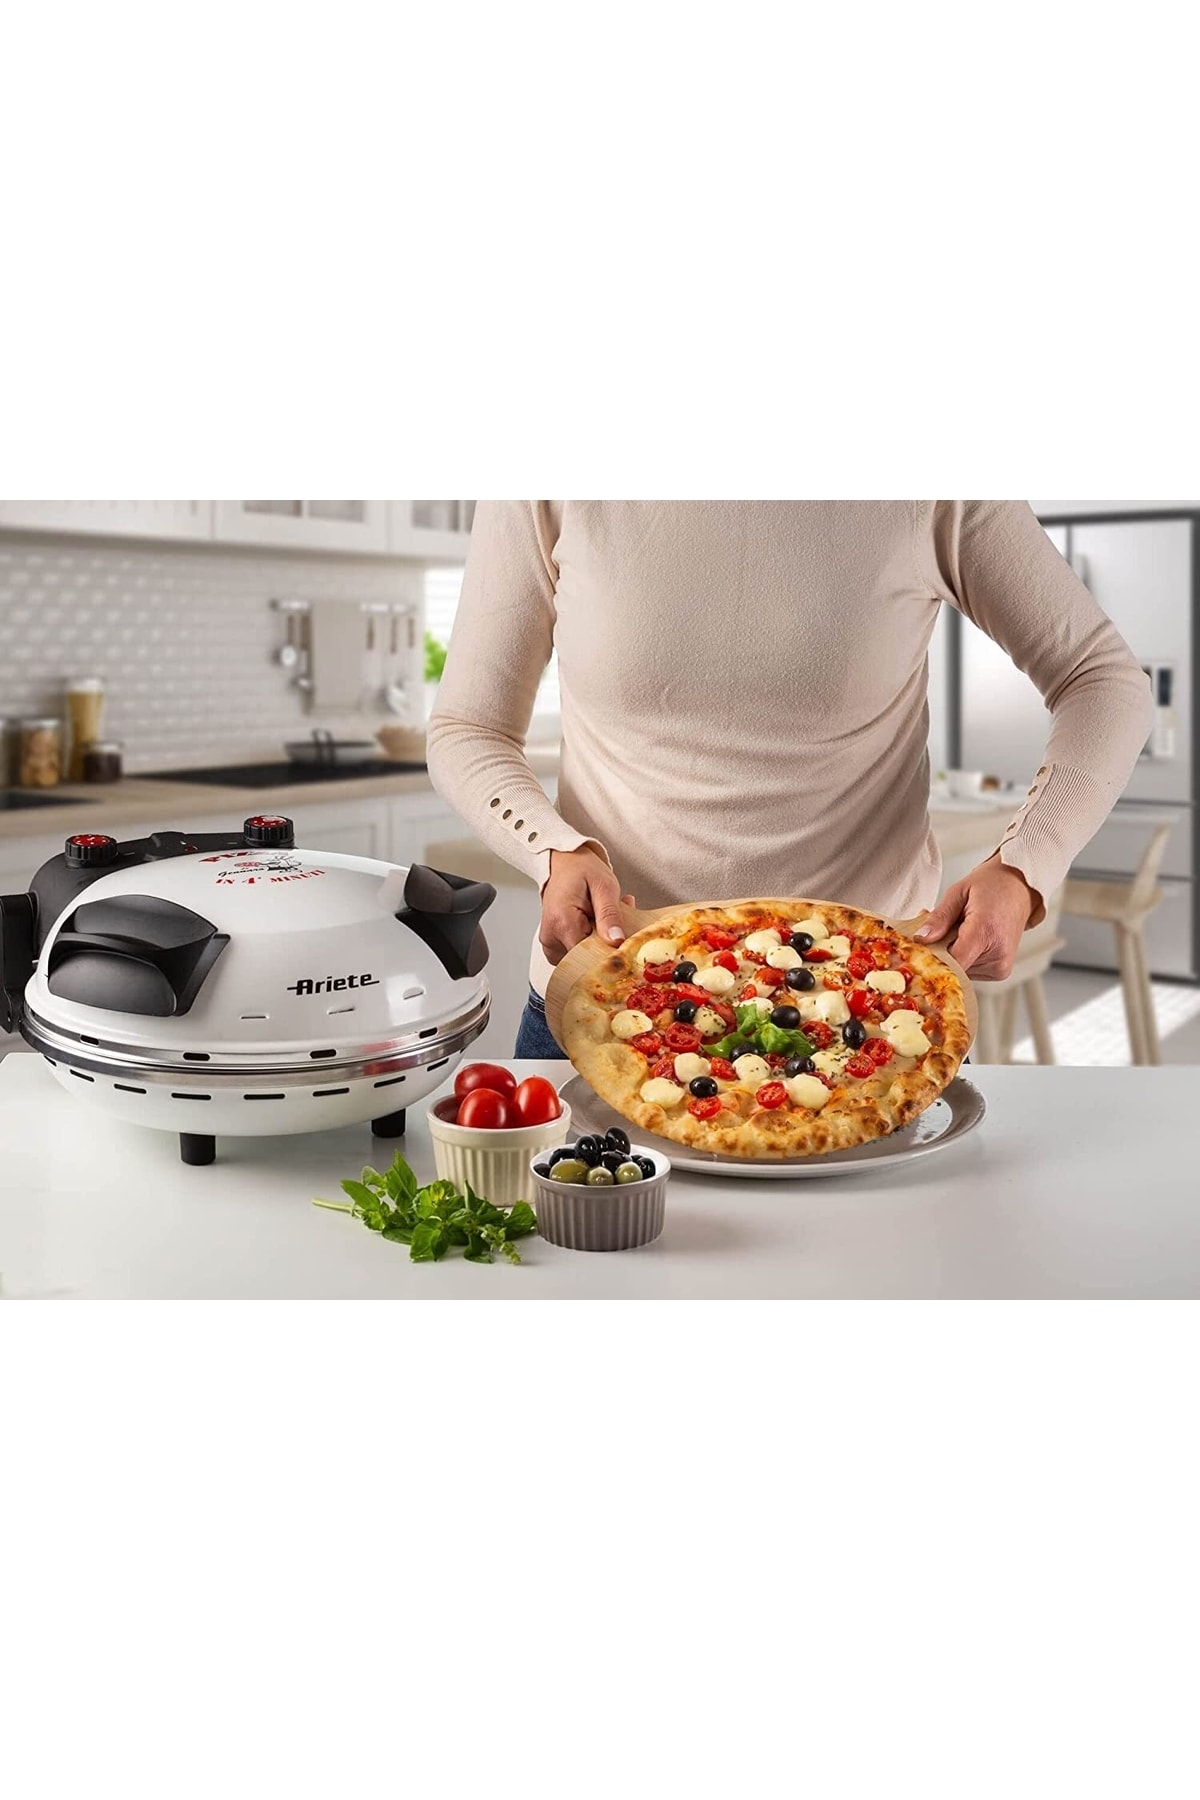 ARİETE VİNTAGE Ariete 918 Pizza 4 Dakika, Pizza Fırını Fiyatı, Yorumları -  Trendyol | Backautomaten